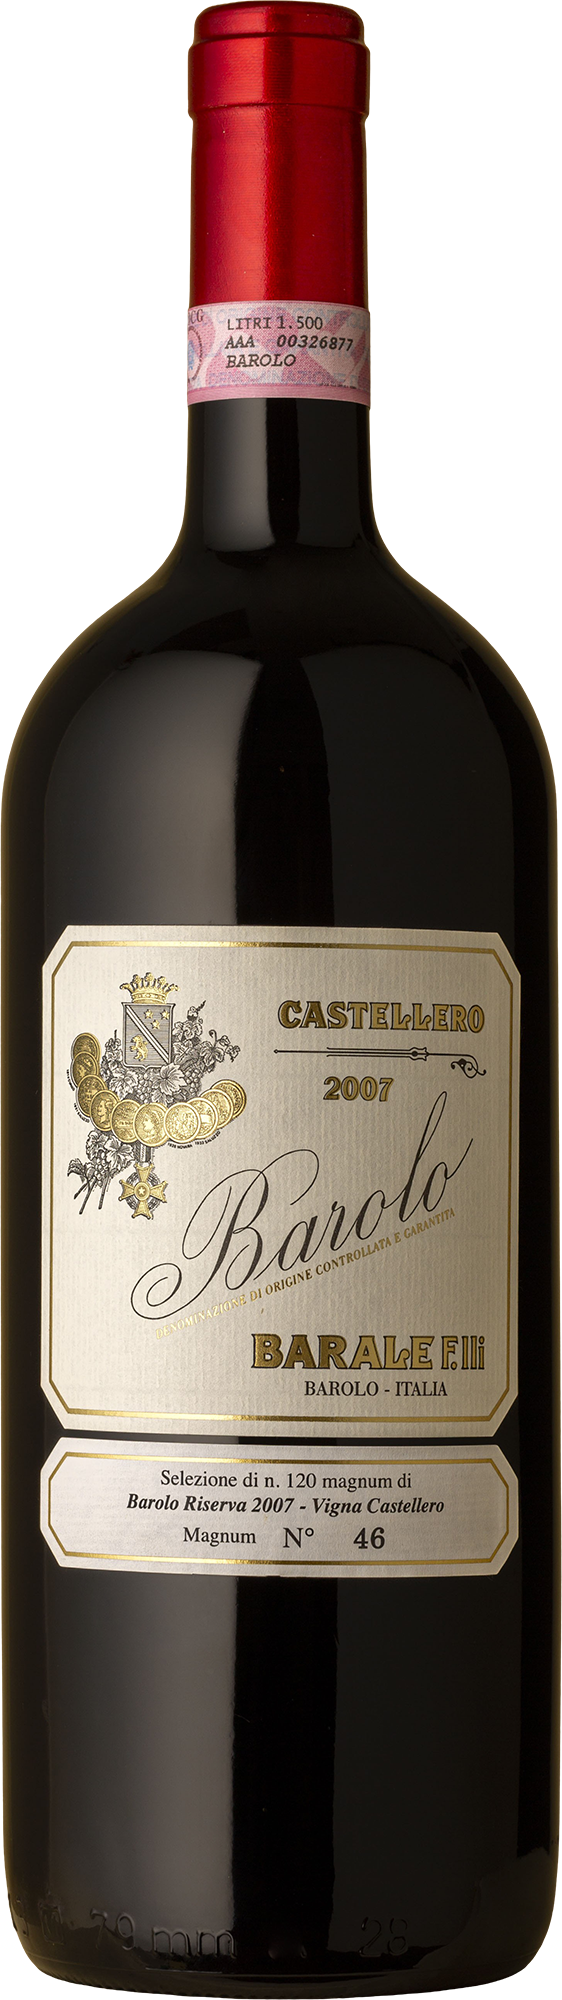 Barale - Barolo Castellero Nebbiolo Magnum 2007 1500mL (Boxed) Red Wine